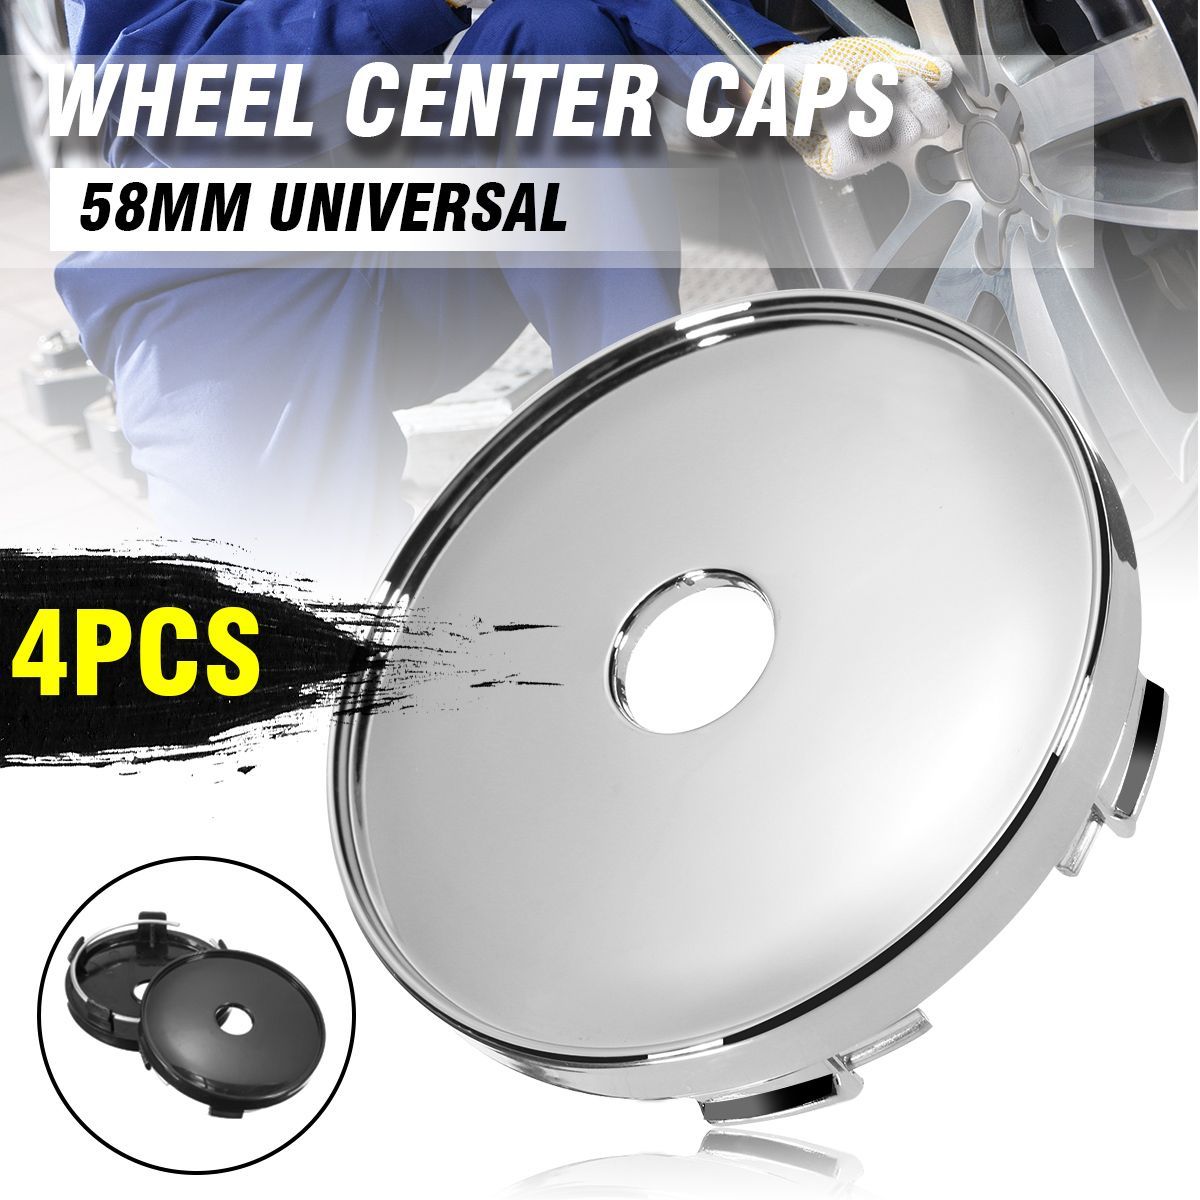 4pcs-58mm-Universal-Chrome-Car-Wheel-Tire-Rims-Center-Hub-Caps-Cover-Decorative-Kit-1616613